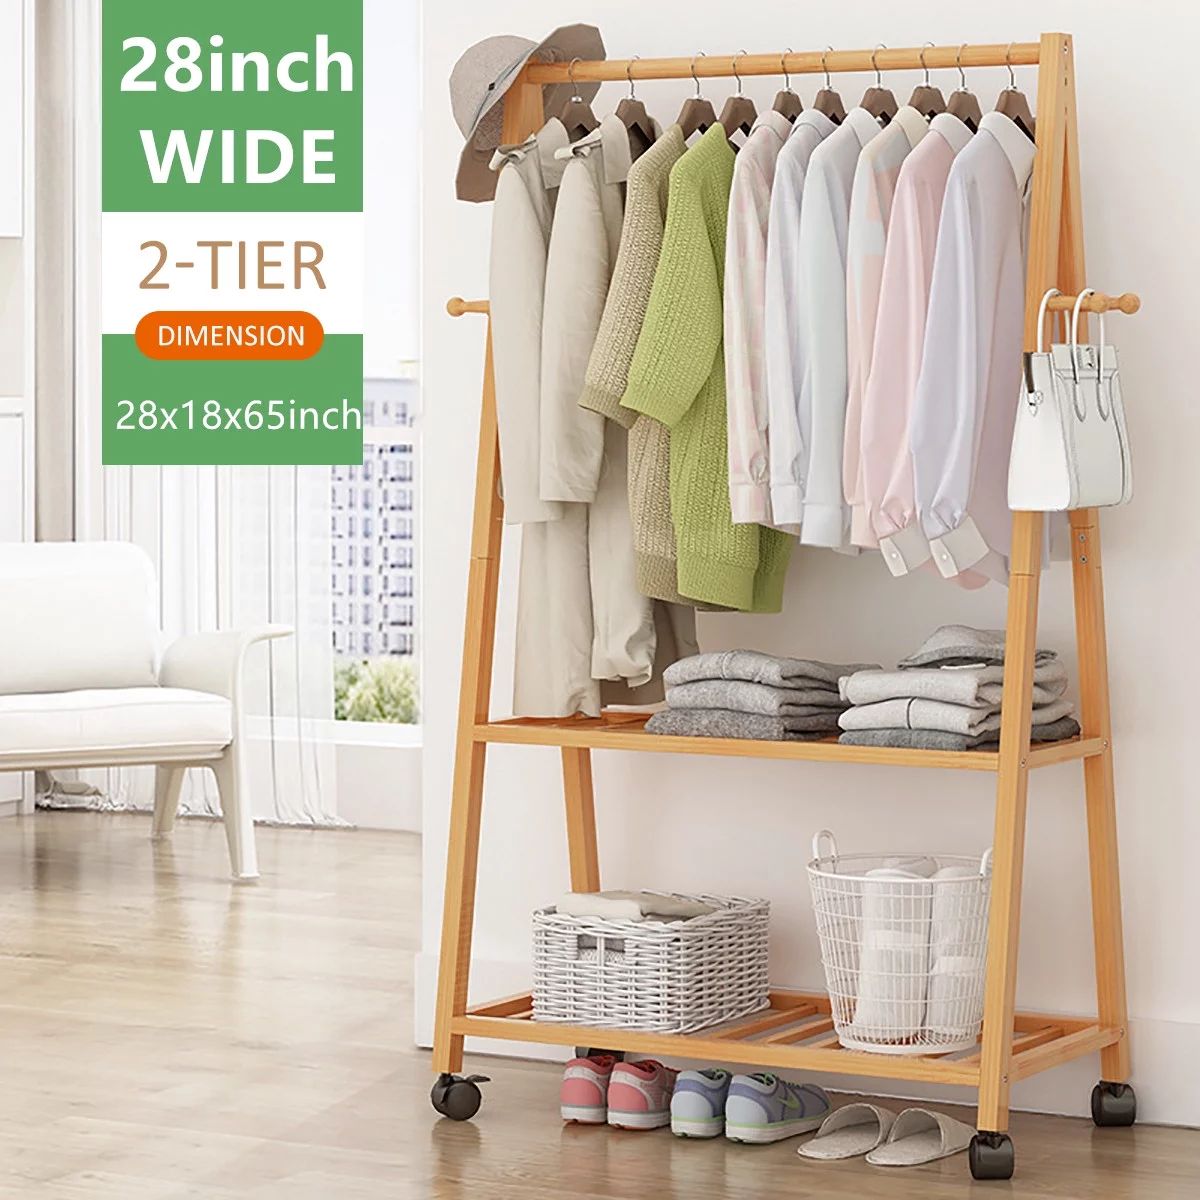 2Tier Bamboo Clothes Hanger Coat Rack Garment Closet Storage Organizer Floor Standing Hanging Clo... | Walmart (US)